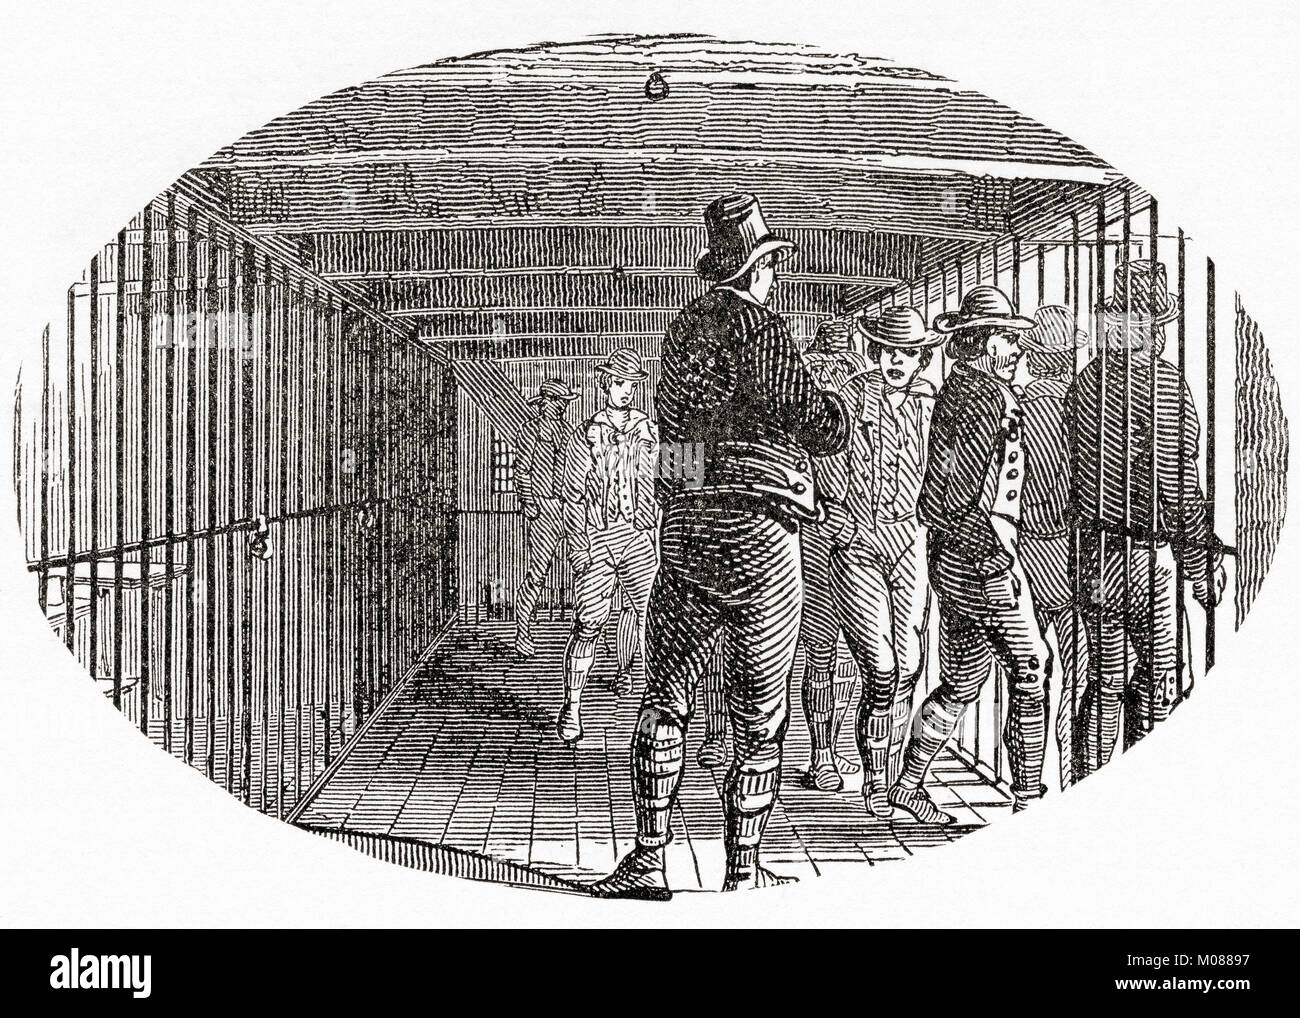 Die Galerie an Bord der HMS York, ein britisches Gefängnis hulk verwendet die Tolpuddle Märtyrer zu Haus. Gefängnis Wracks wurden Schiffe, die Behörden als schwimmende Gefängnisse im 18. und 19. Jahrhunderten stillgelegt. Die Märtyrer von Tolpuddle, veröffentlicht 1934. Stockfoto